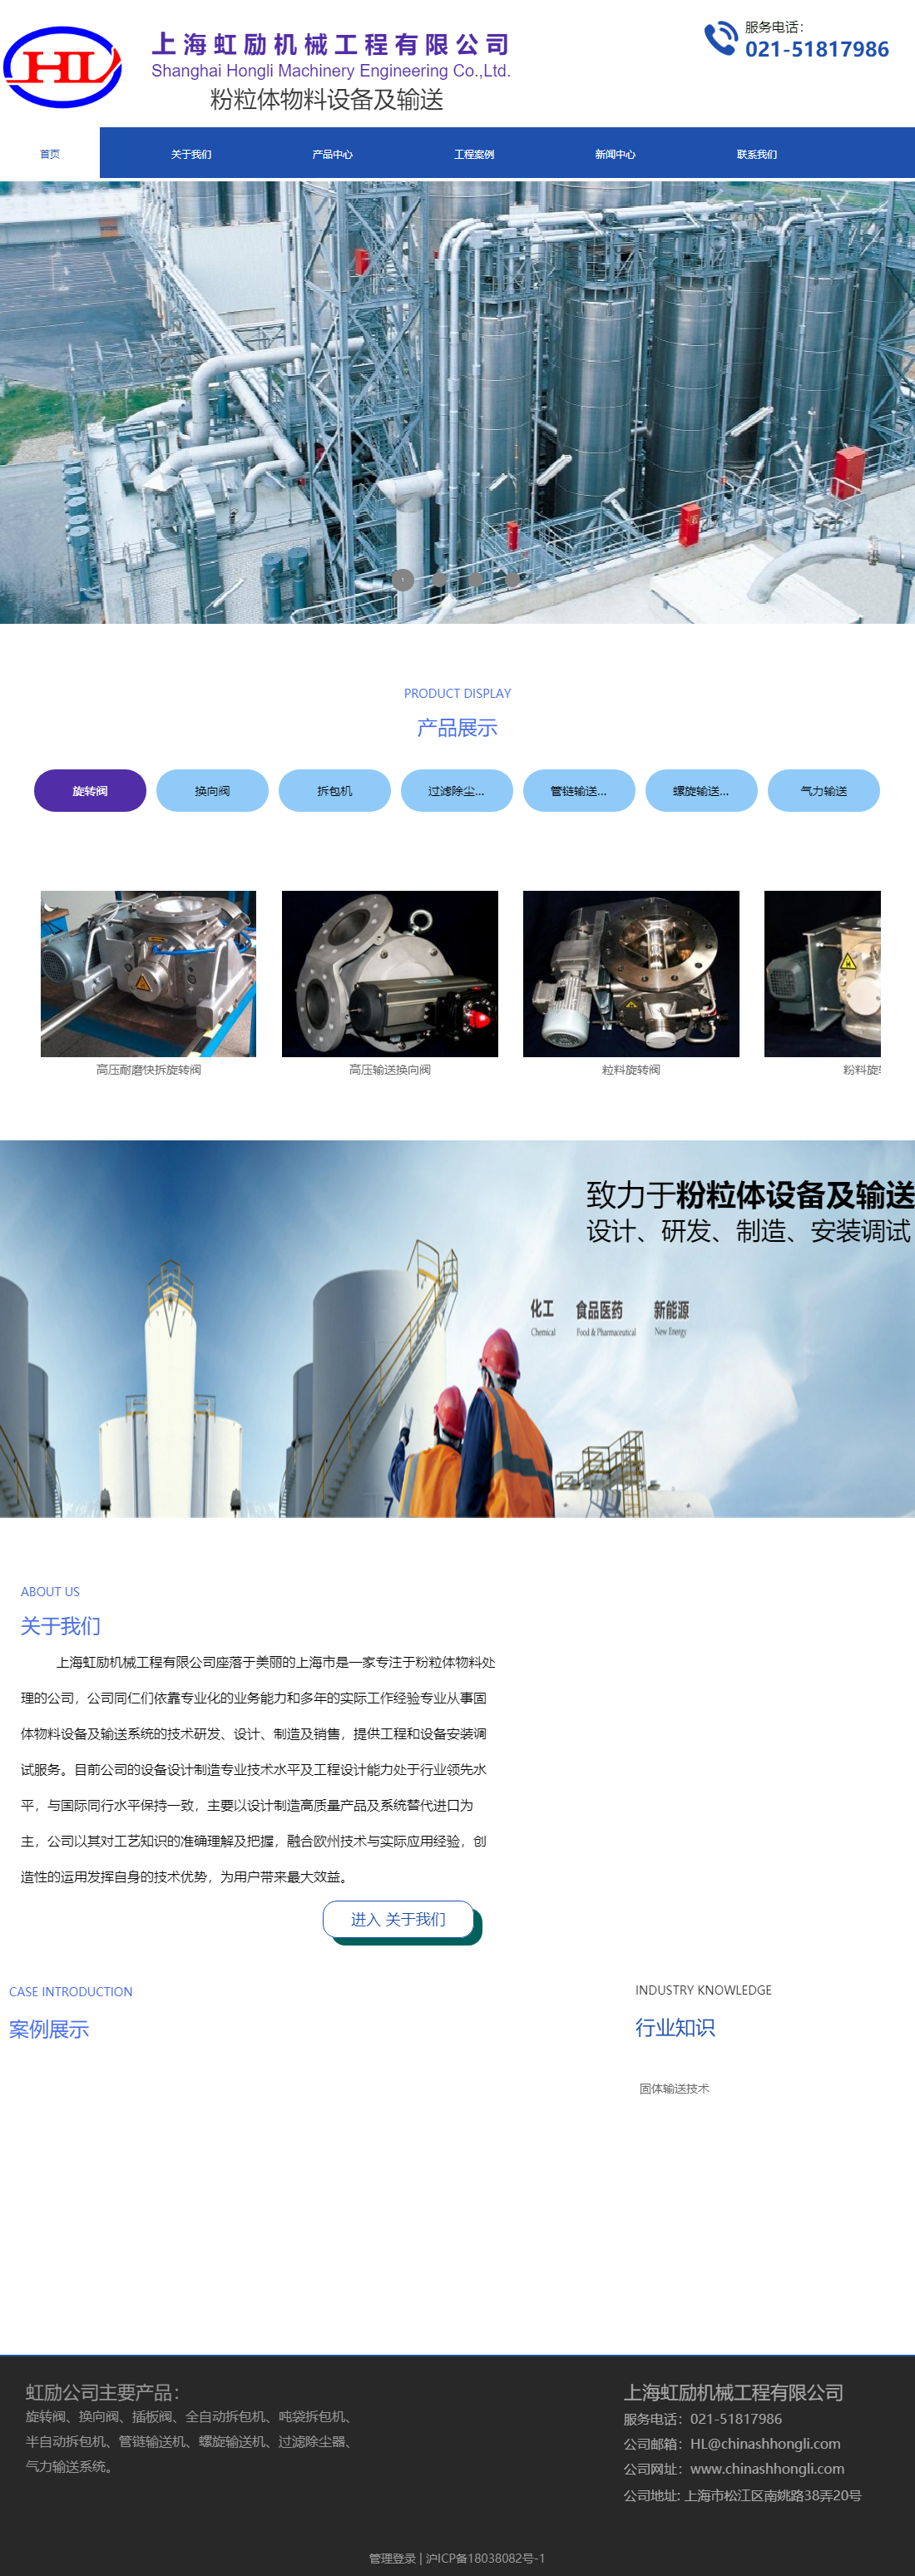 上海虹励机械工程有限公司网站案例